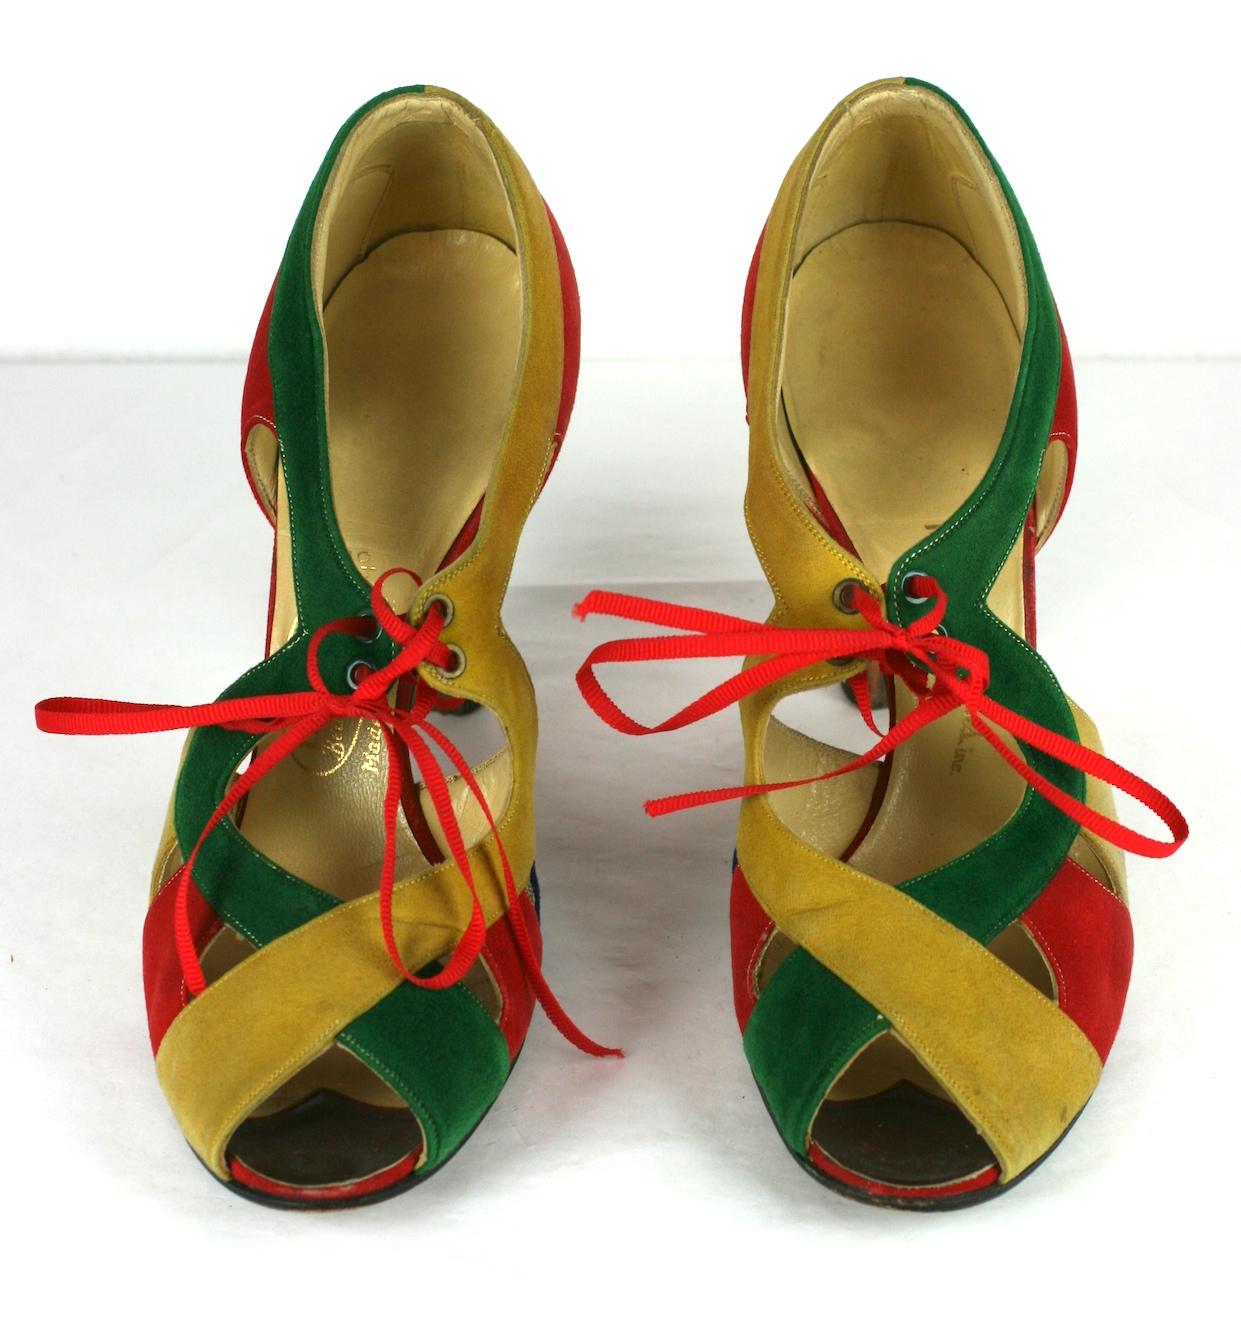 I. Chaussures Art Déco Miller en daim coloré des années 1930. Des couleurs vives et frappantes dans des tons primaires. I. Miller était un magasin légendaire de la 5e Avenue au début de la vente au détail à New York.
Les lacets ne sont pas